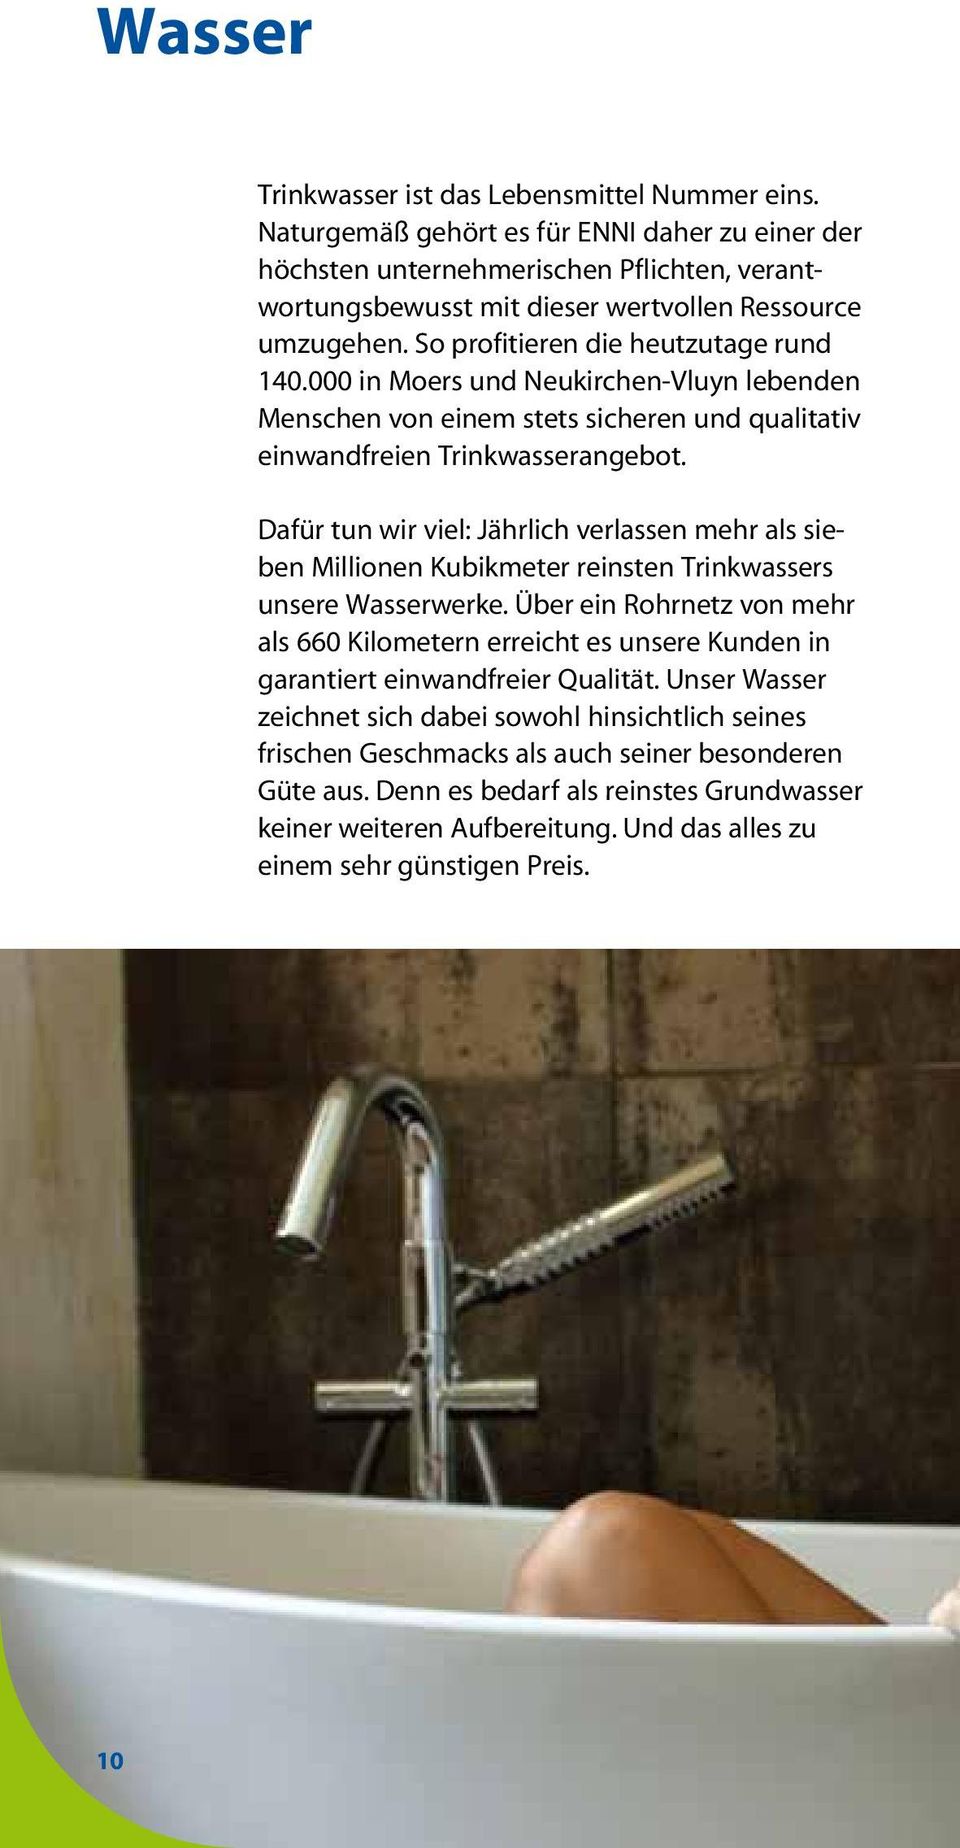 000 in Moers und Neukirchen-Vluyn lebenden Menschen von einem stets sicheren und qualitativ einwandfreien Trinkwasserangebot.